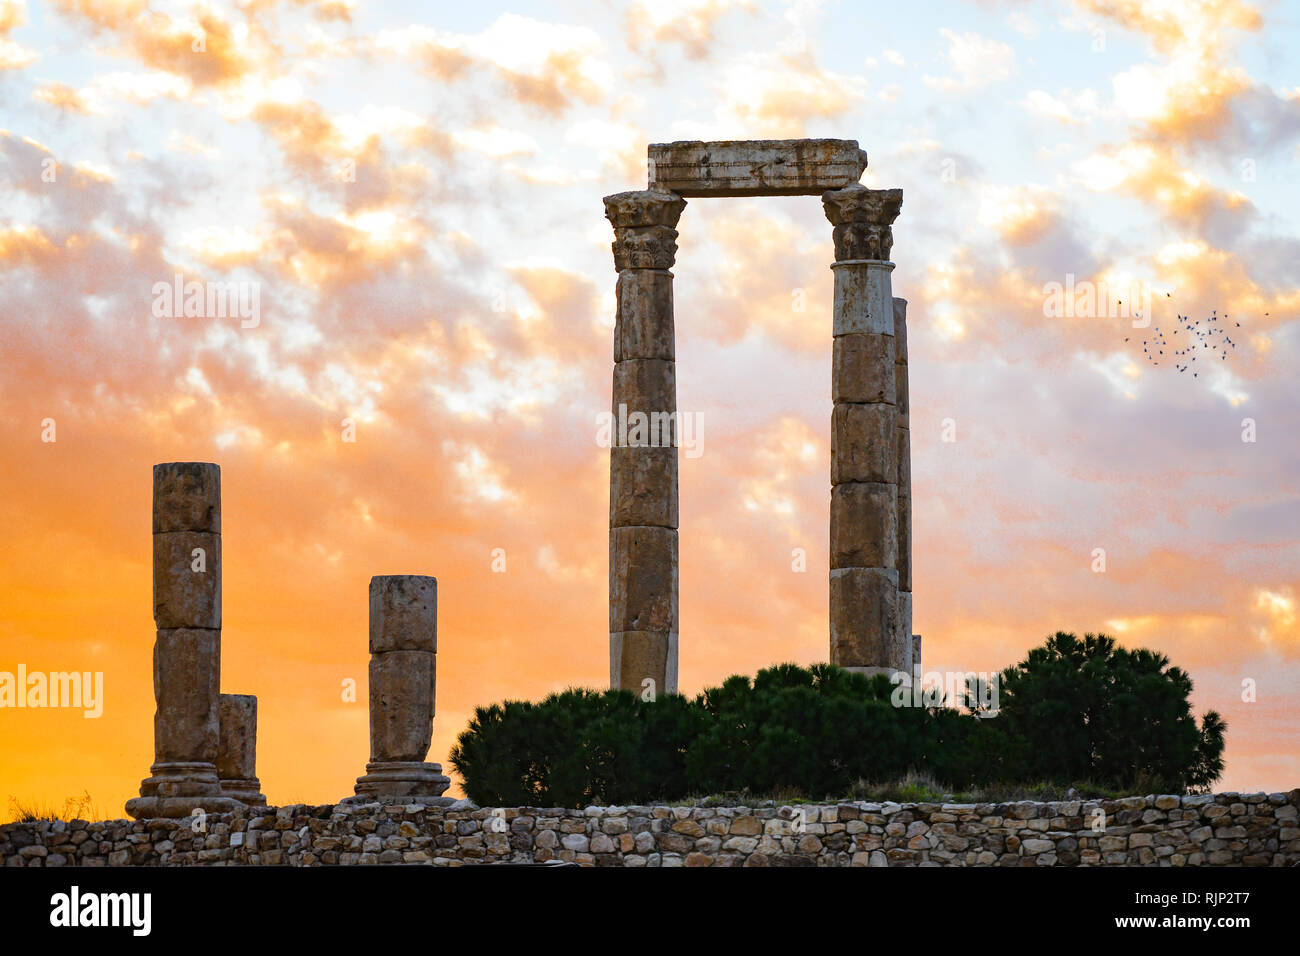 La vue étonnante de quelques magnifiques colonnes de la Citadelle d'Amman au cours d'un beau coucher du soleil, la Jordanie. Banque D'Images